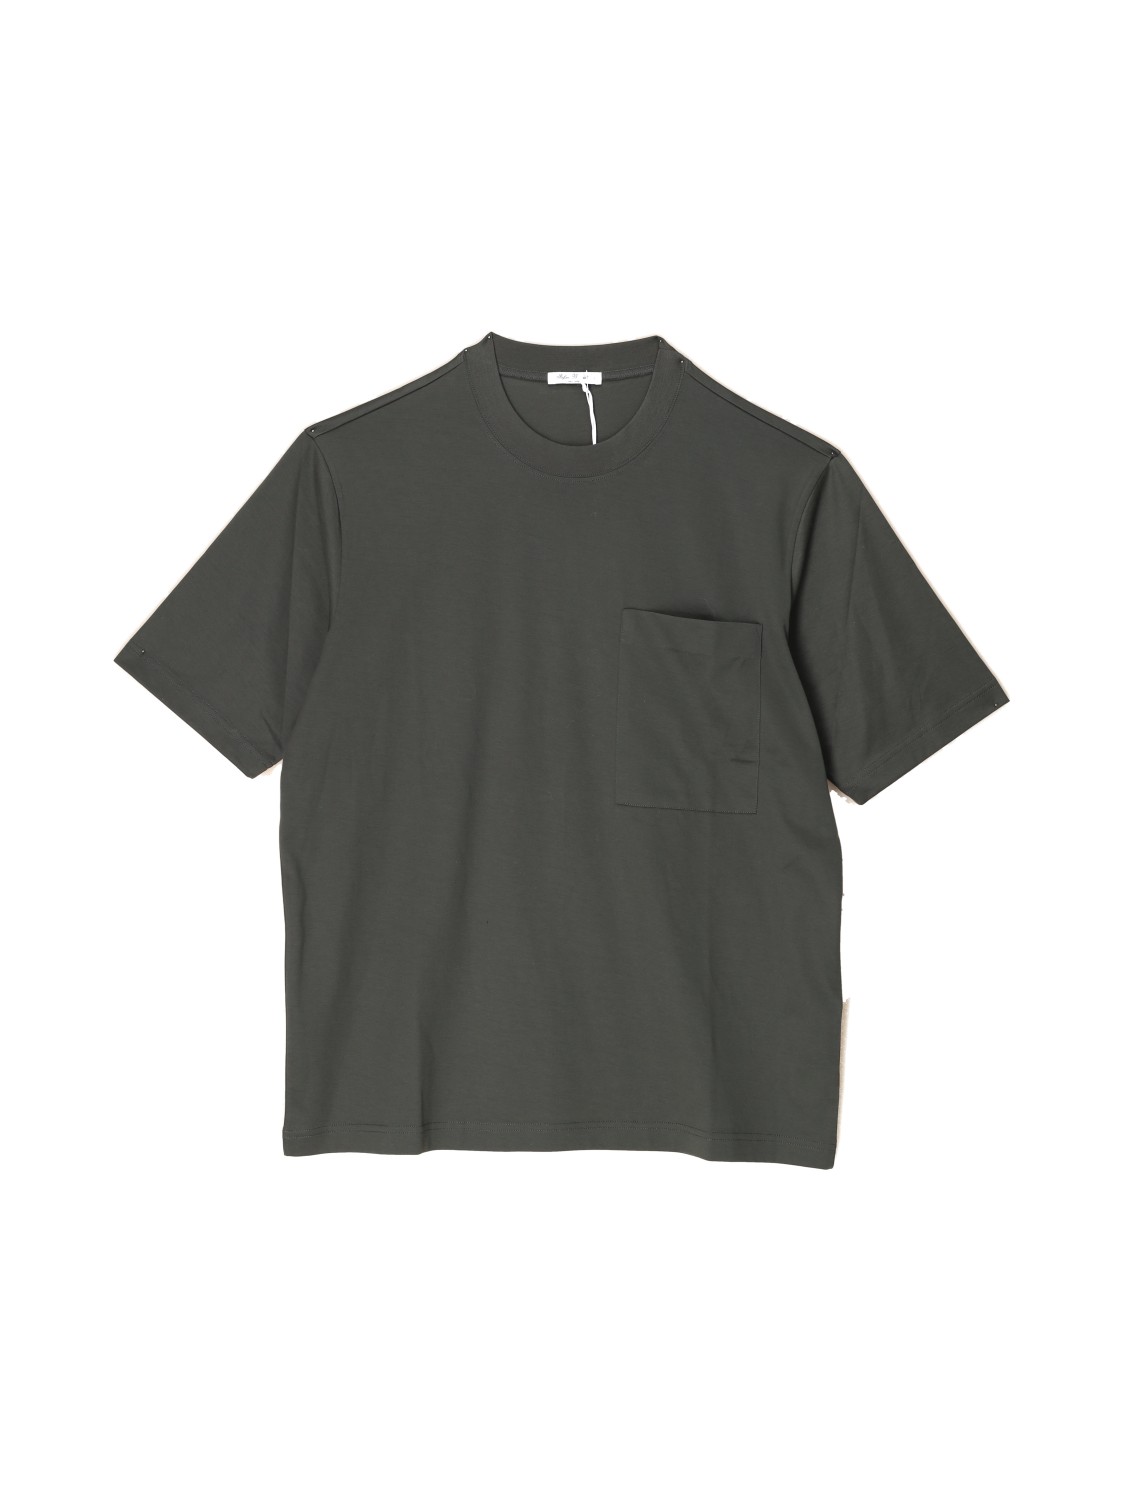 Stefan Brandt eike - cotton t-shirt khaki M